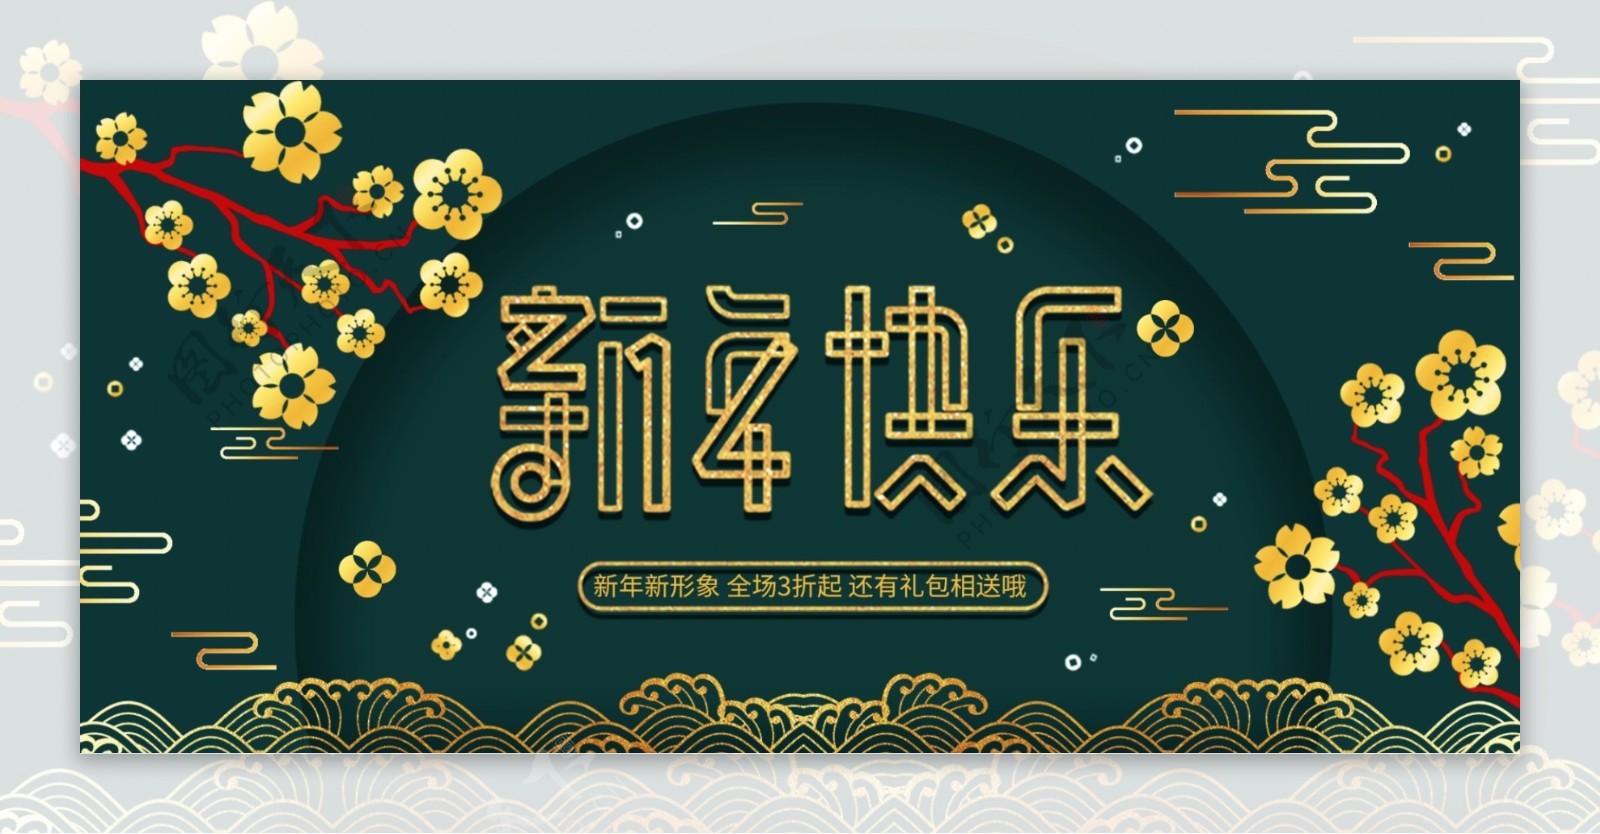 新年快乐服装鞋业电商促销banner